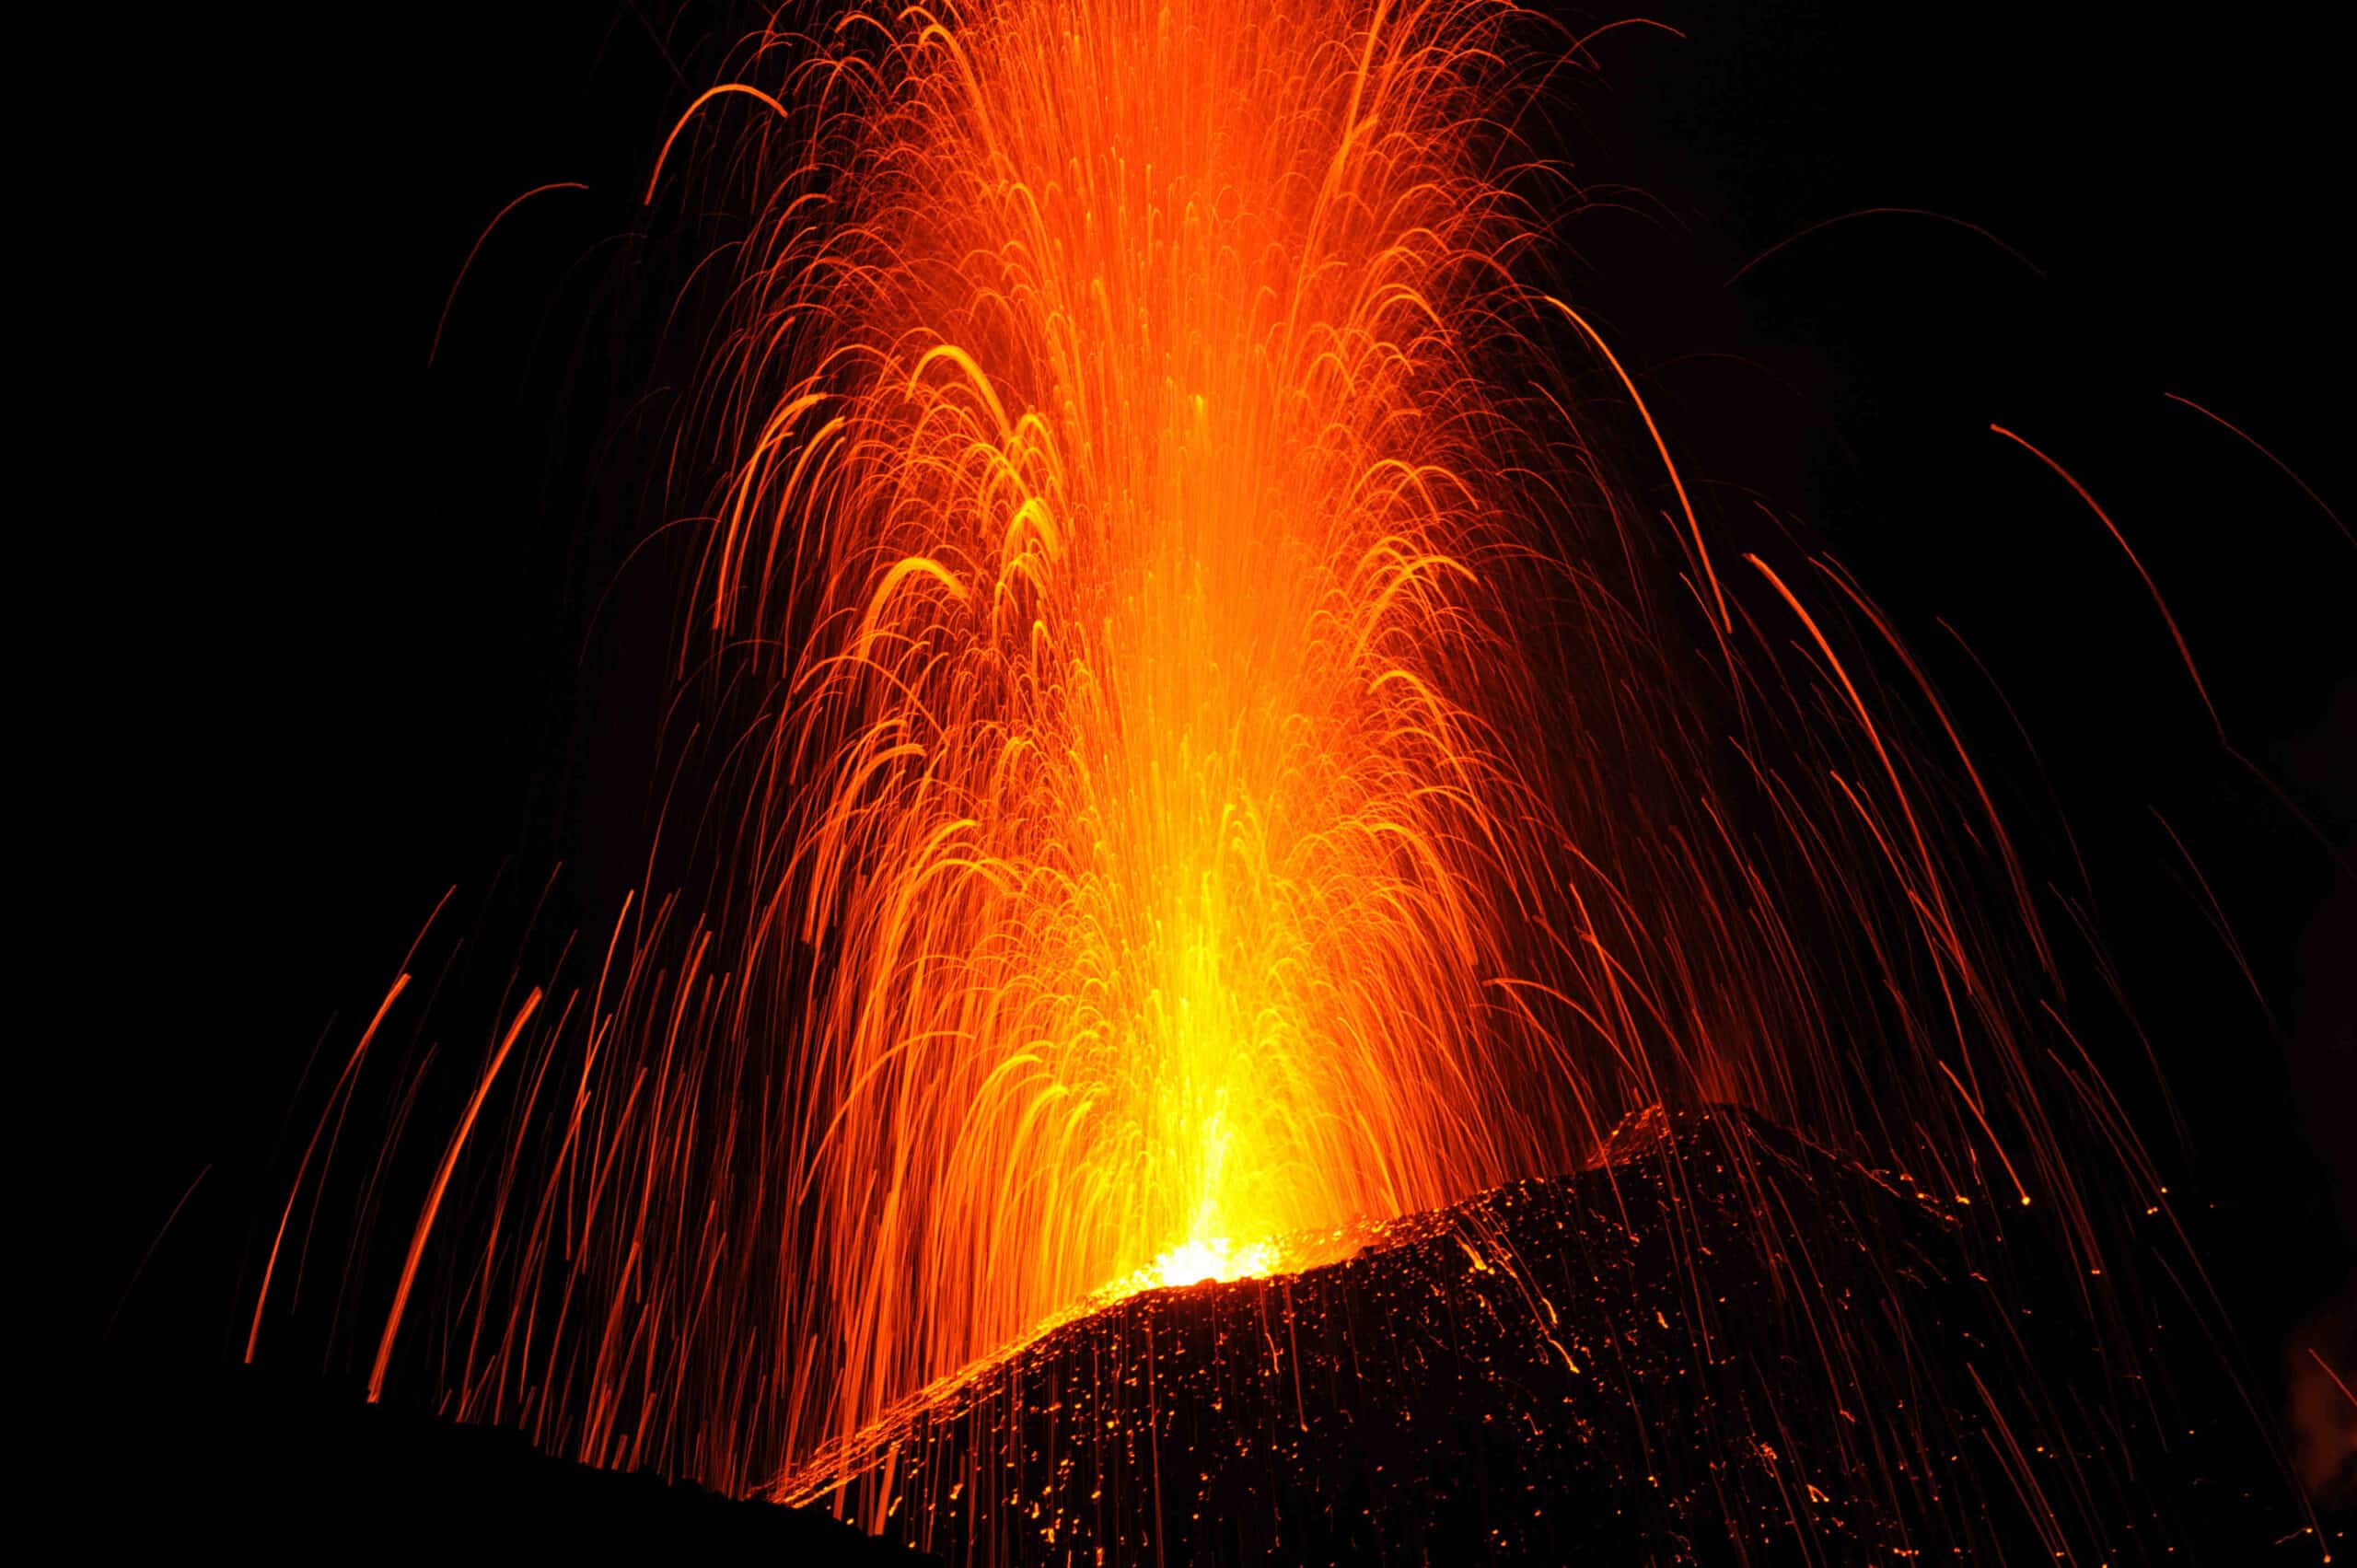 Comment réagir lors d'une éruption volcanique ?